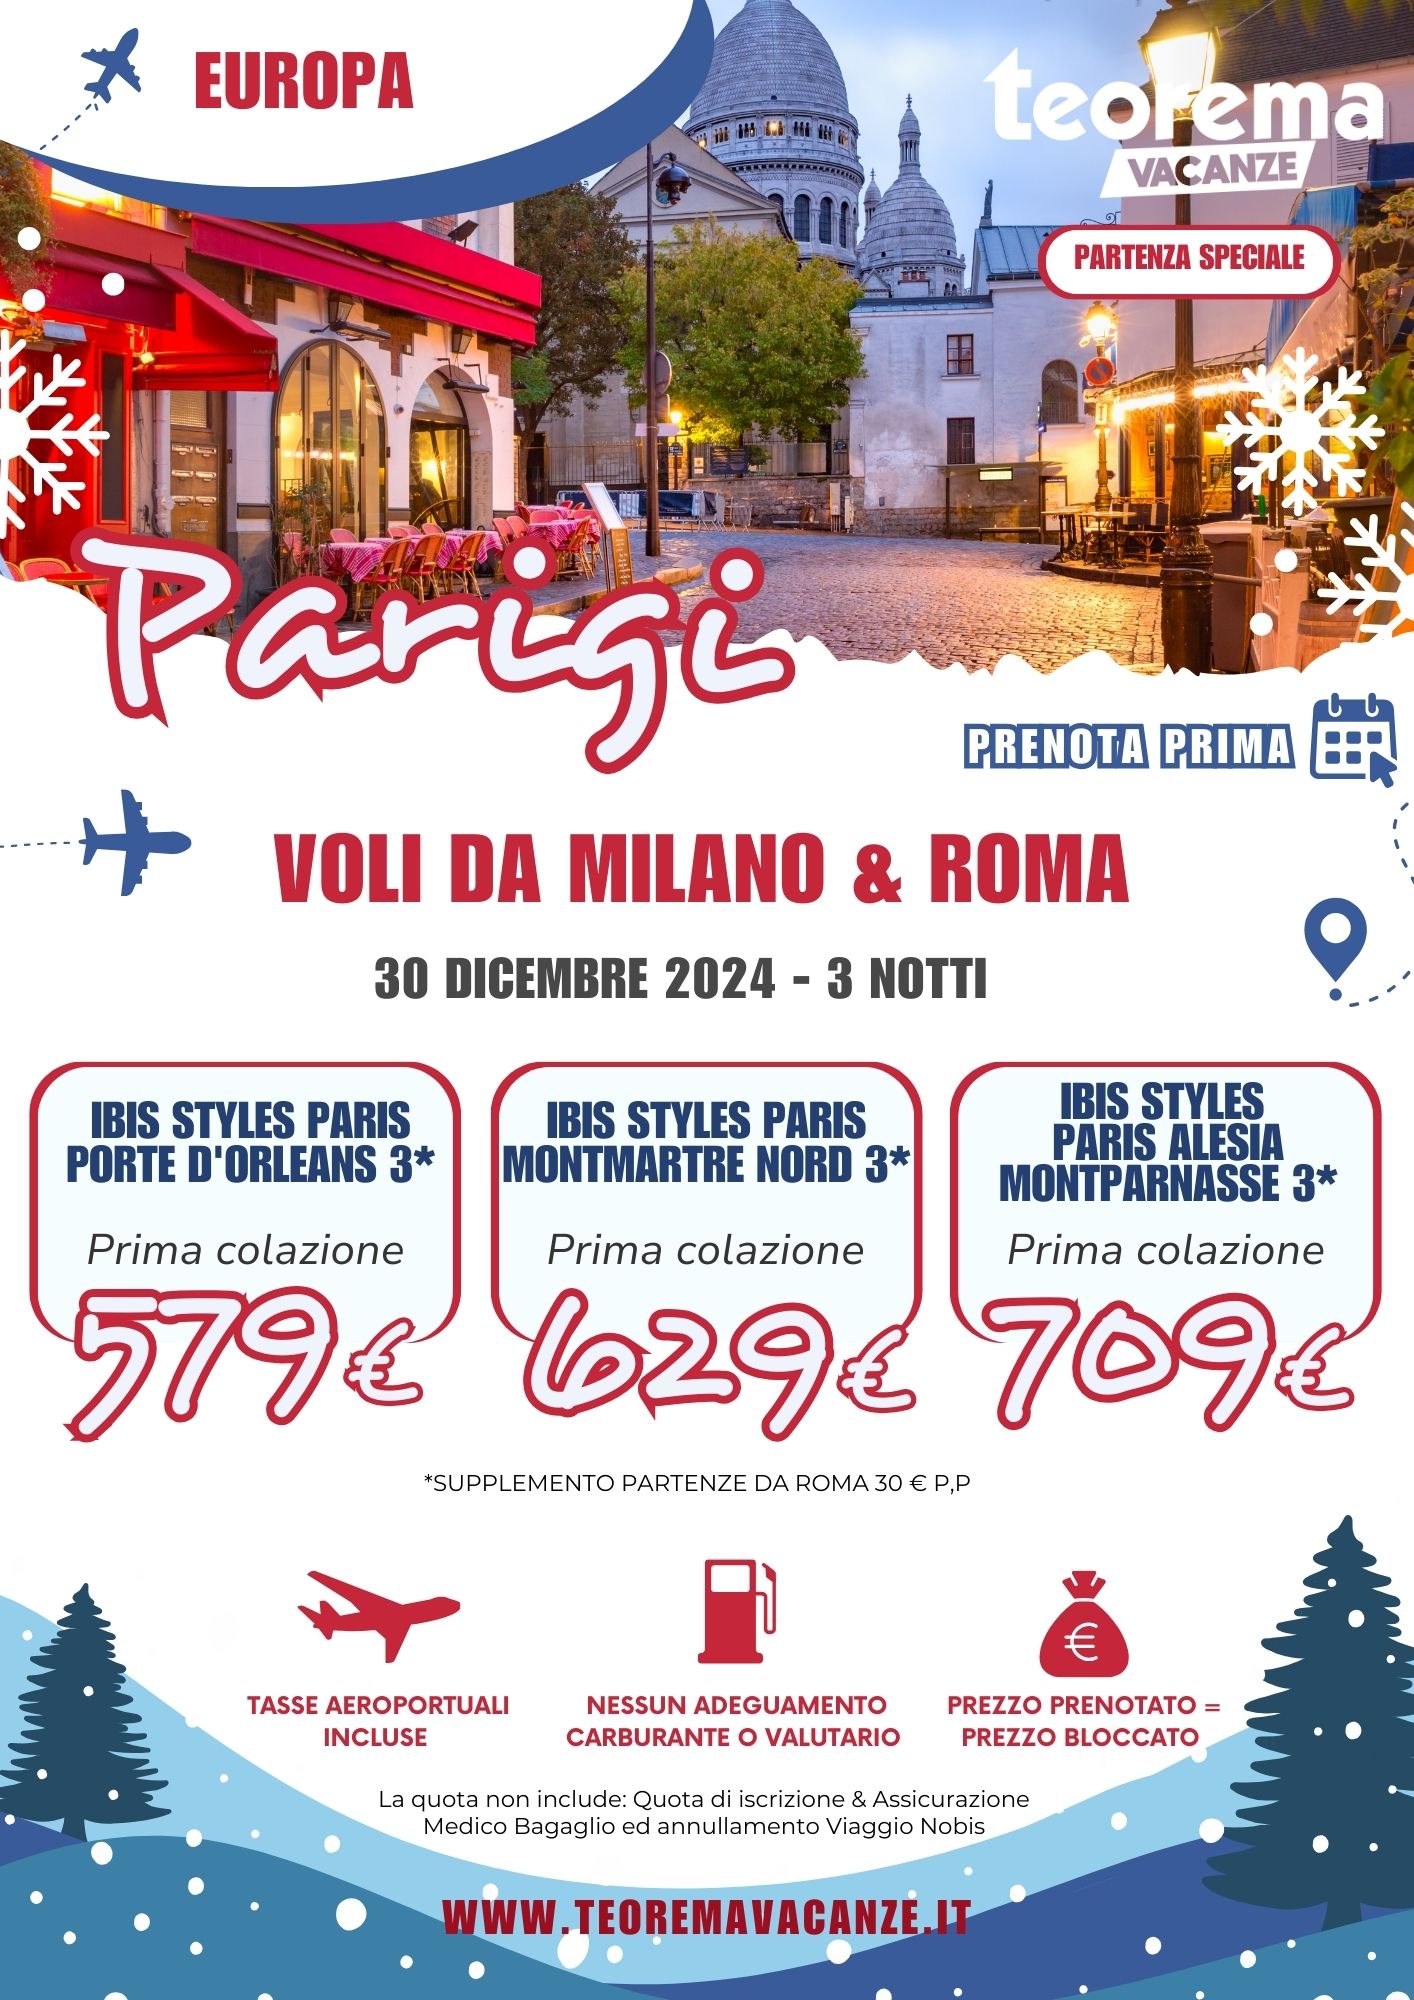 TEOREMA WINTER 2025 - PARIGI DA MILANO & ROMA